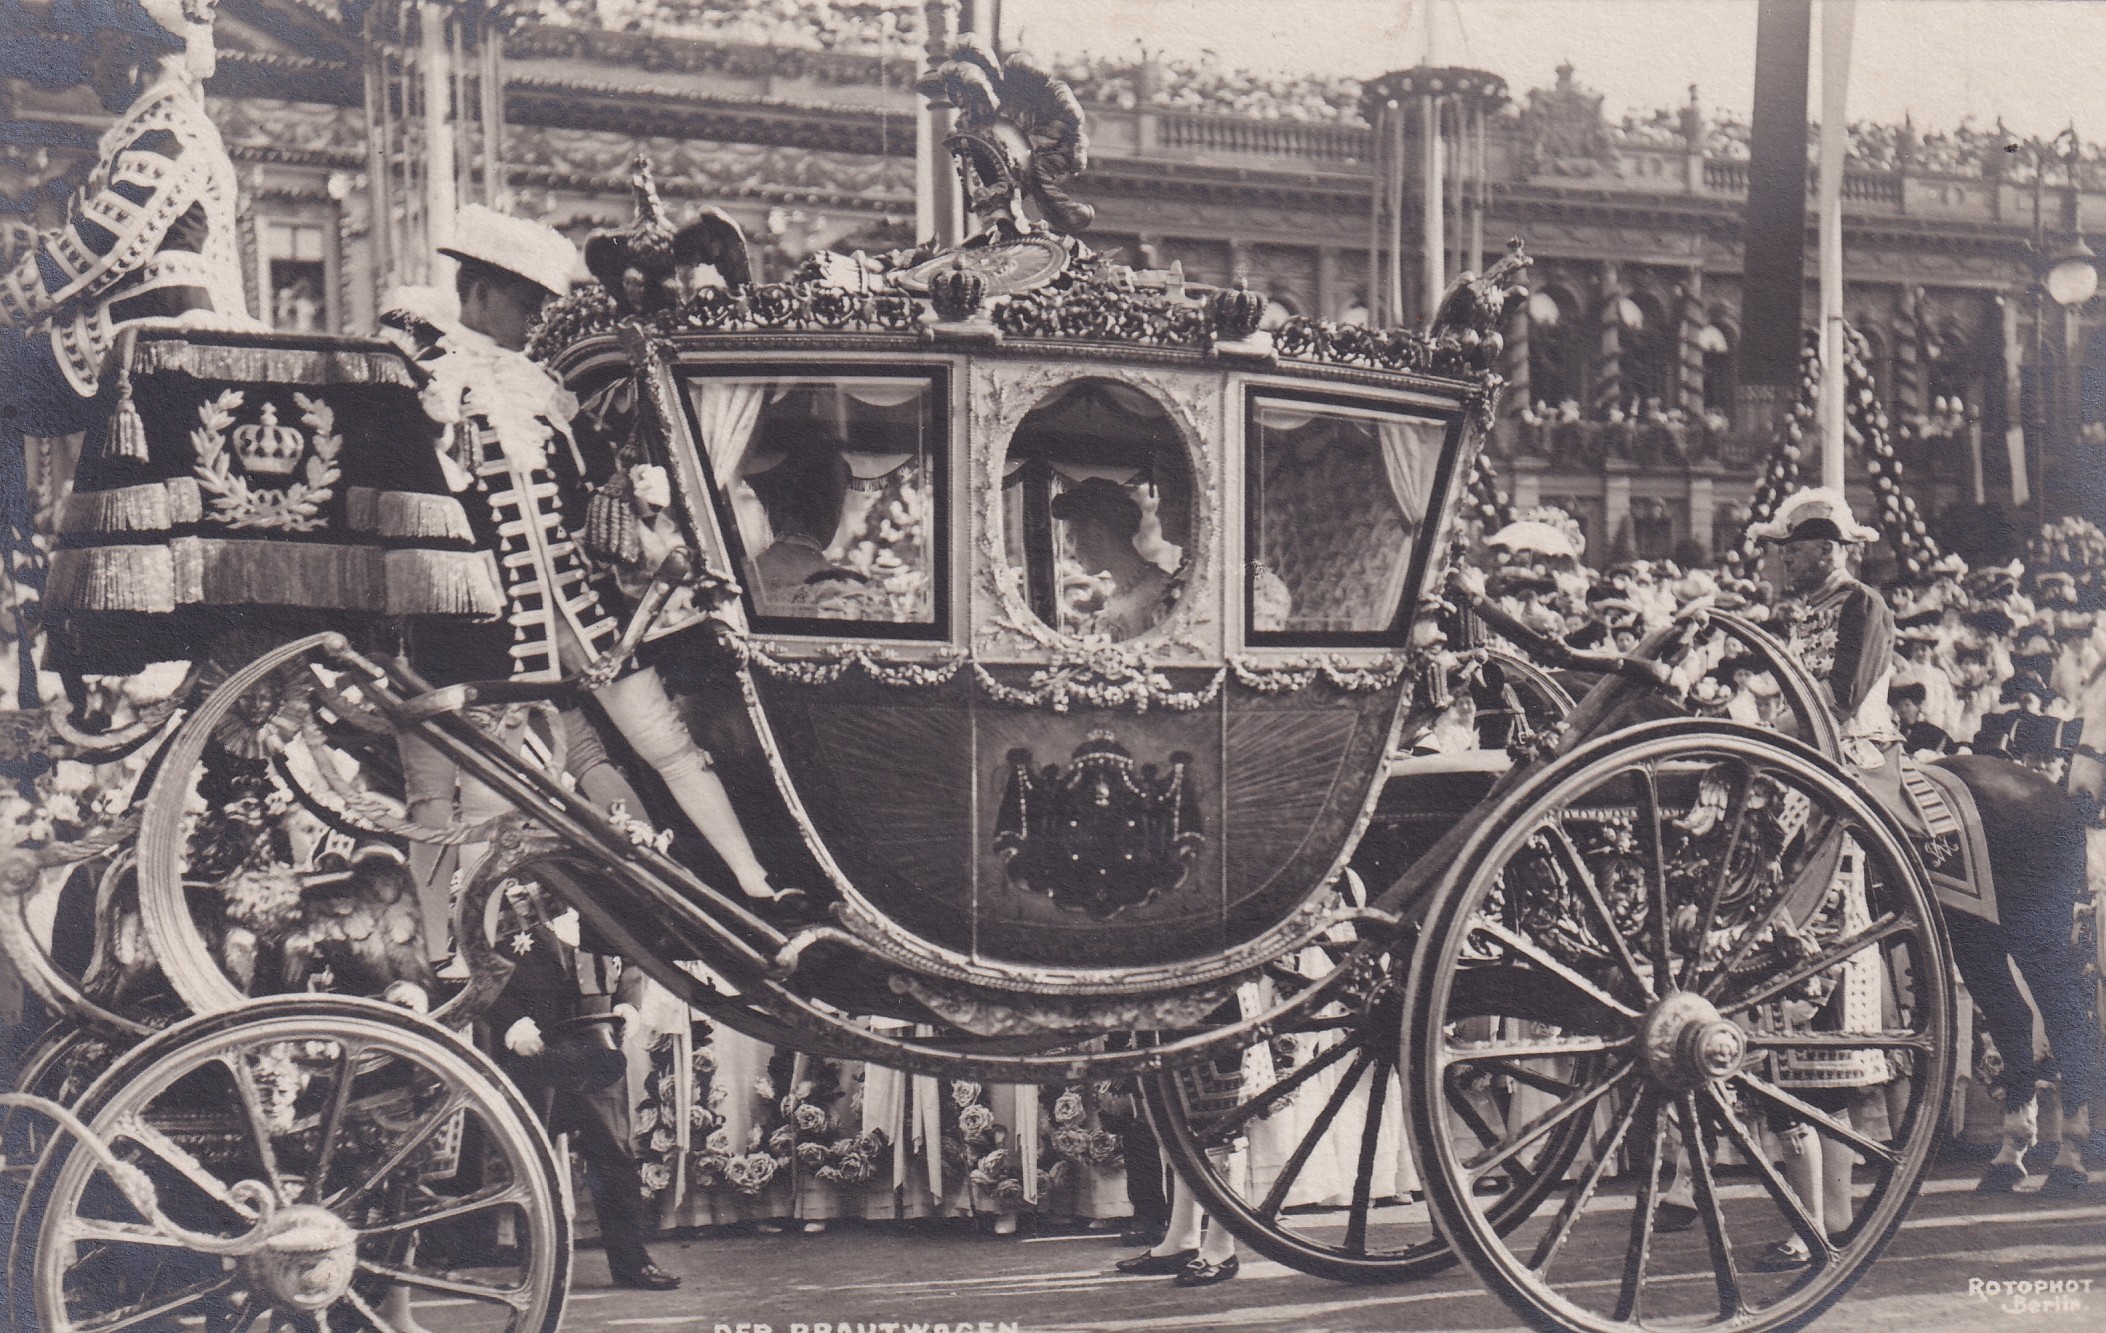 Bildpostkarte mit einem Foto vom Einzug der Kronprinzessin Cecilie in Berlin, 3. Juni 1905 (Schloß Wernigerode GmbH RR-F)